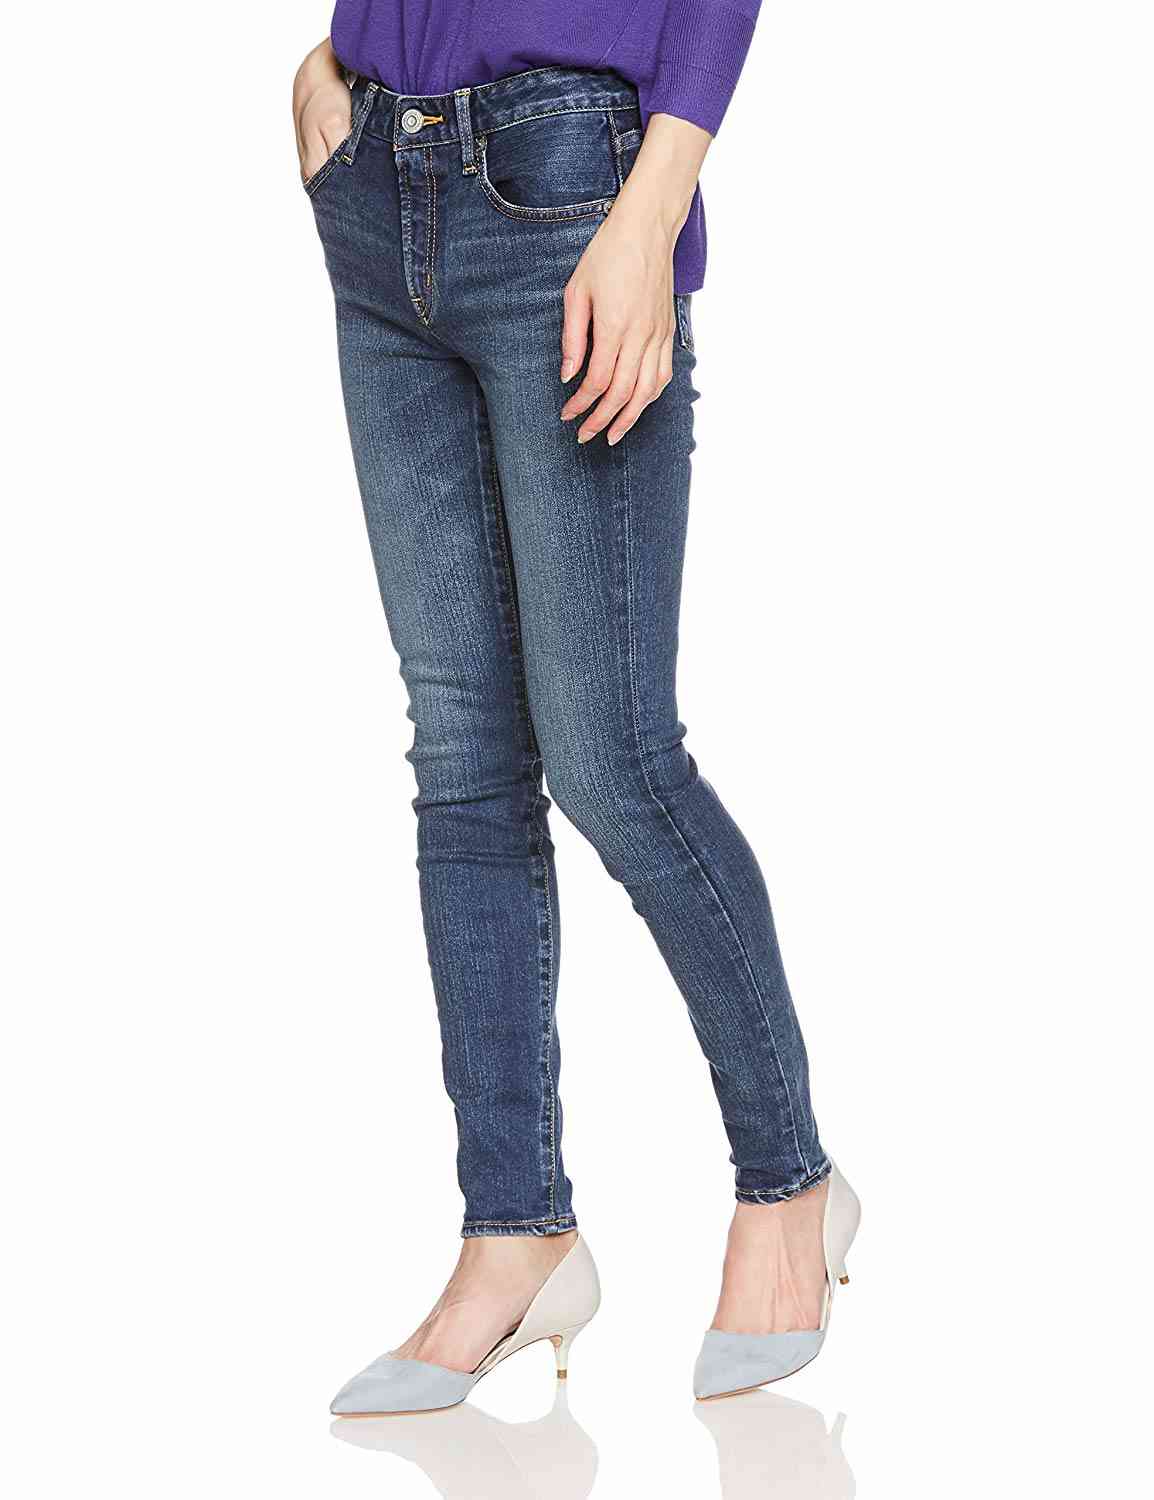 レディース 19年流行りのジーンズのおすすめ人気ブランドランキング10選 選び方のポイントも解説 Corecty